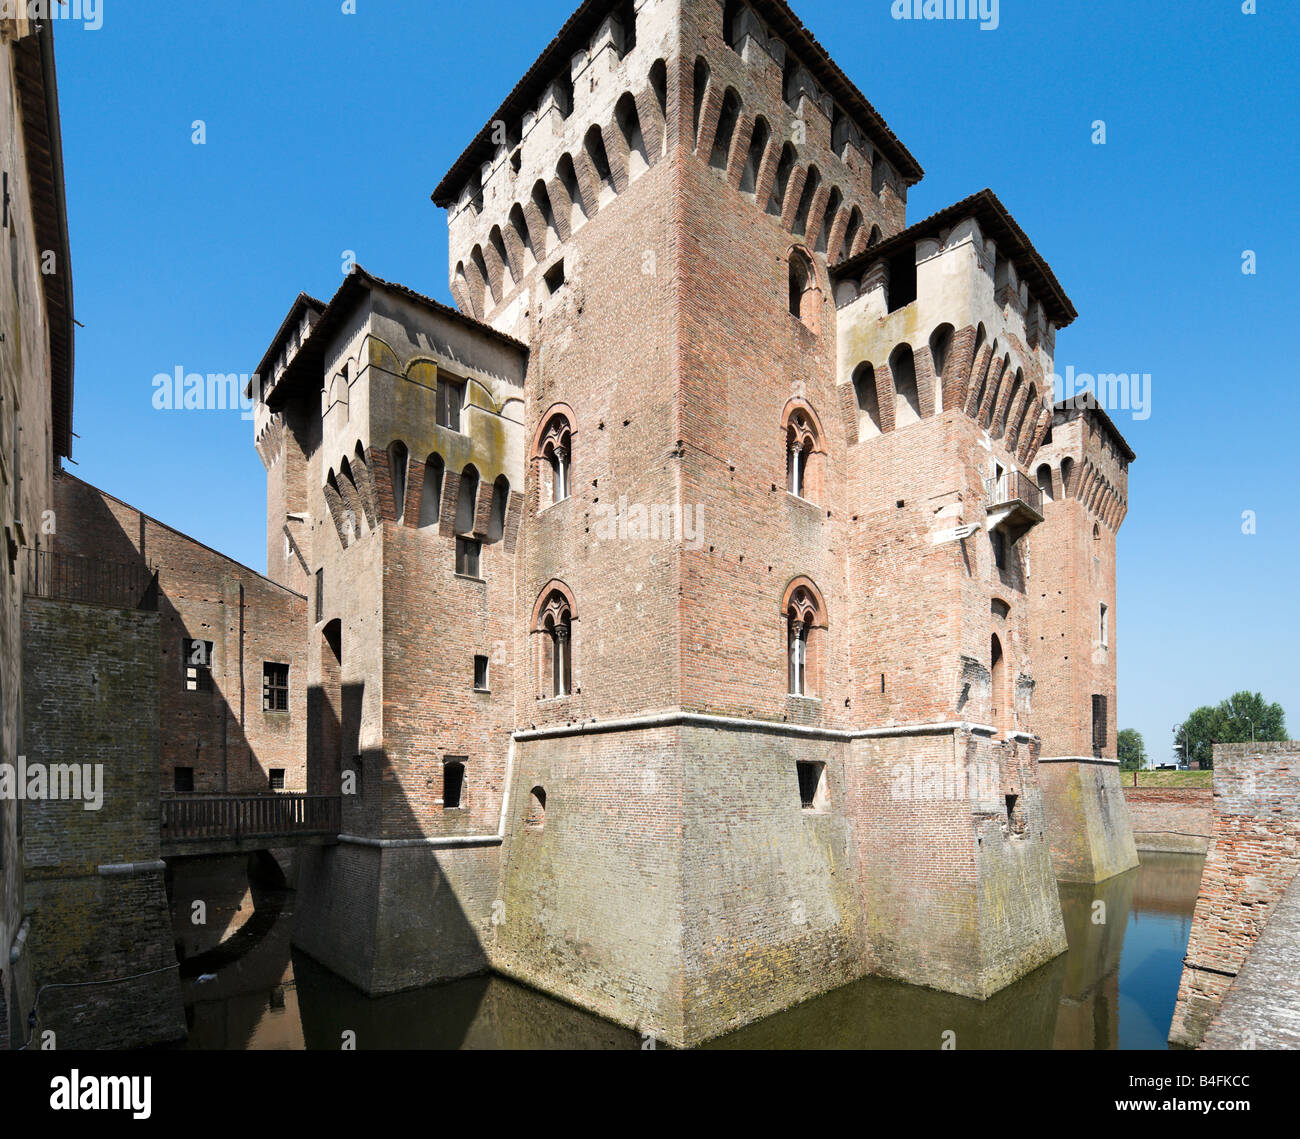 The Castello di San Giorgio attached to the Palazzo Ducale, Mantua (Mantova), Lombardy, Italy Stock Photo